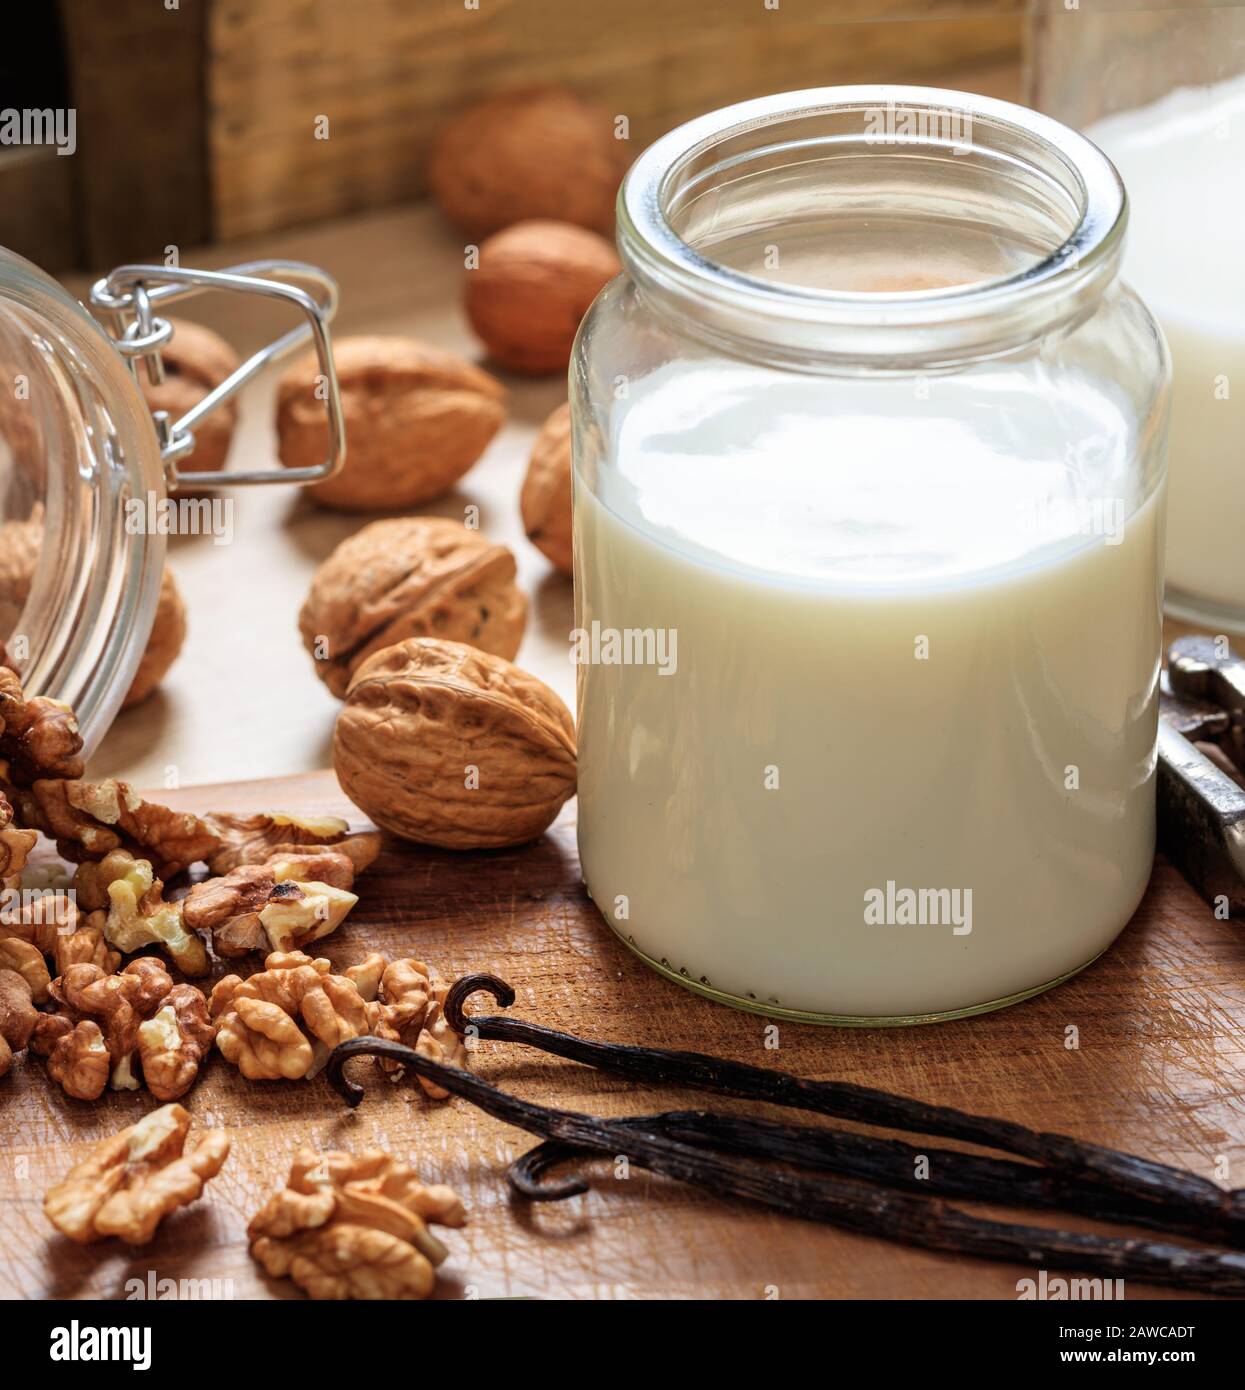 Nussmilch, kein Milchmilchersatz auf einem Holztisch. Nüsse und Glas mit Milch, laktosefreier Milchersatz für Veganer Stockfoto